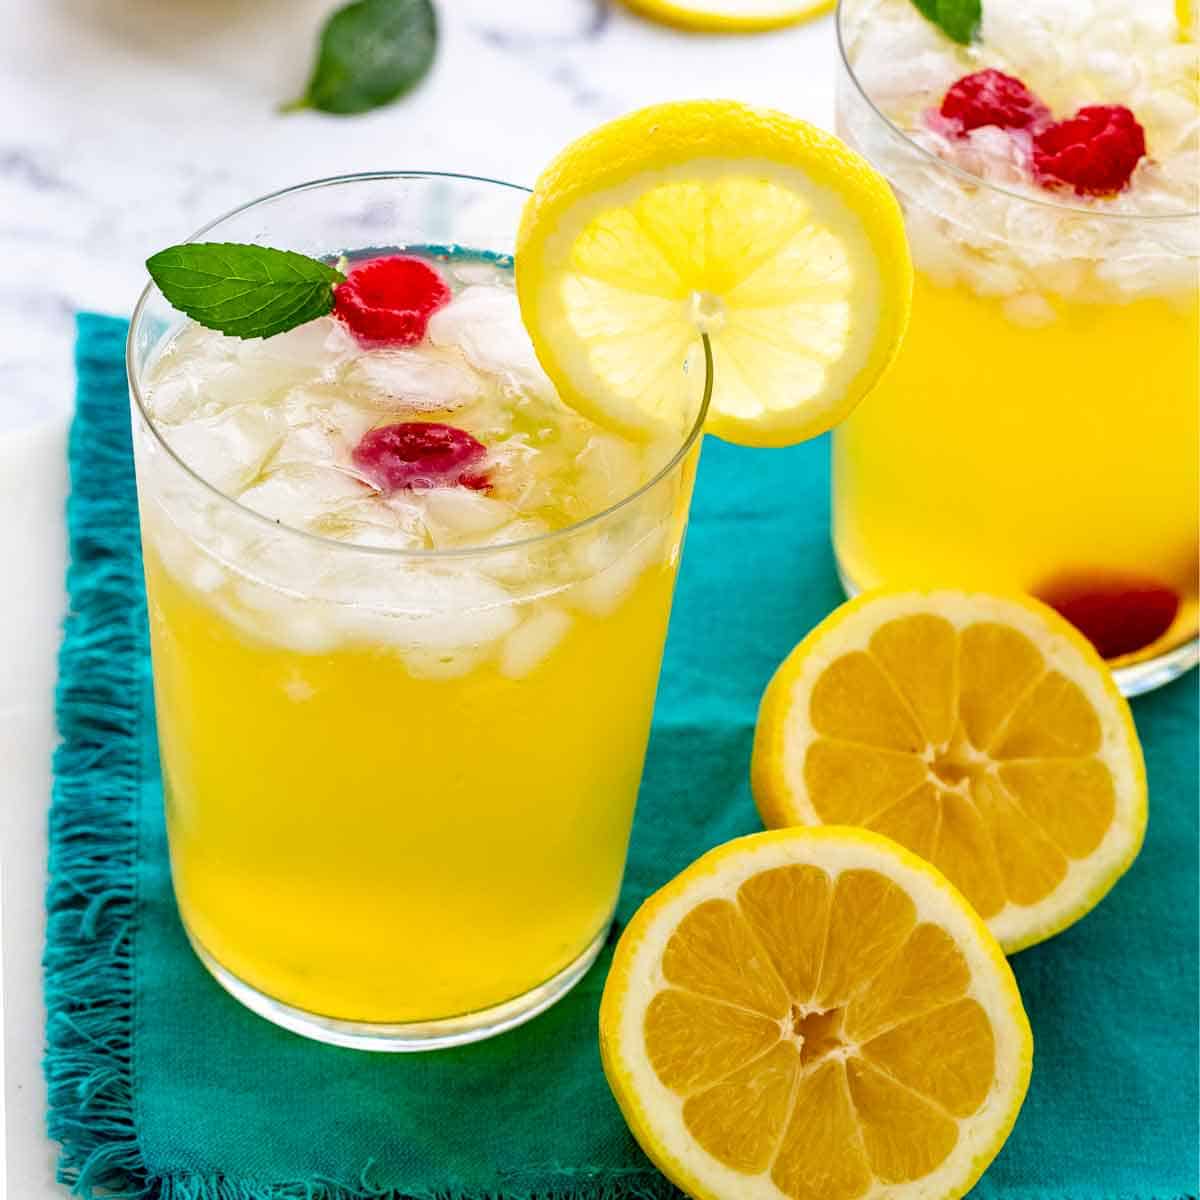 Siro Pha Chế Vị Chanh Vàng Torani Classic Lemon Syrup 750ml Mỹ